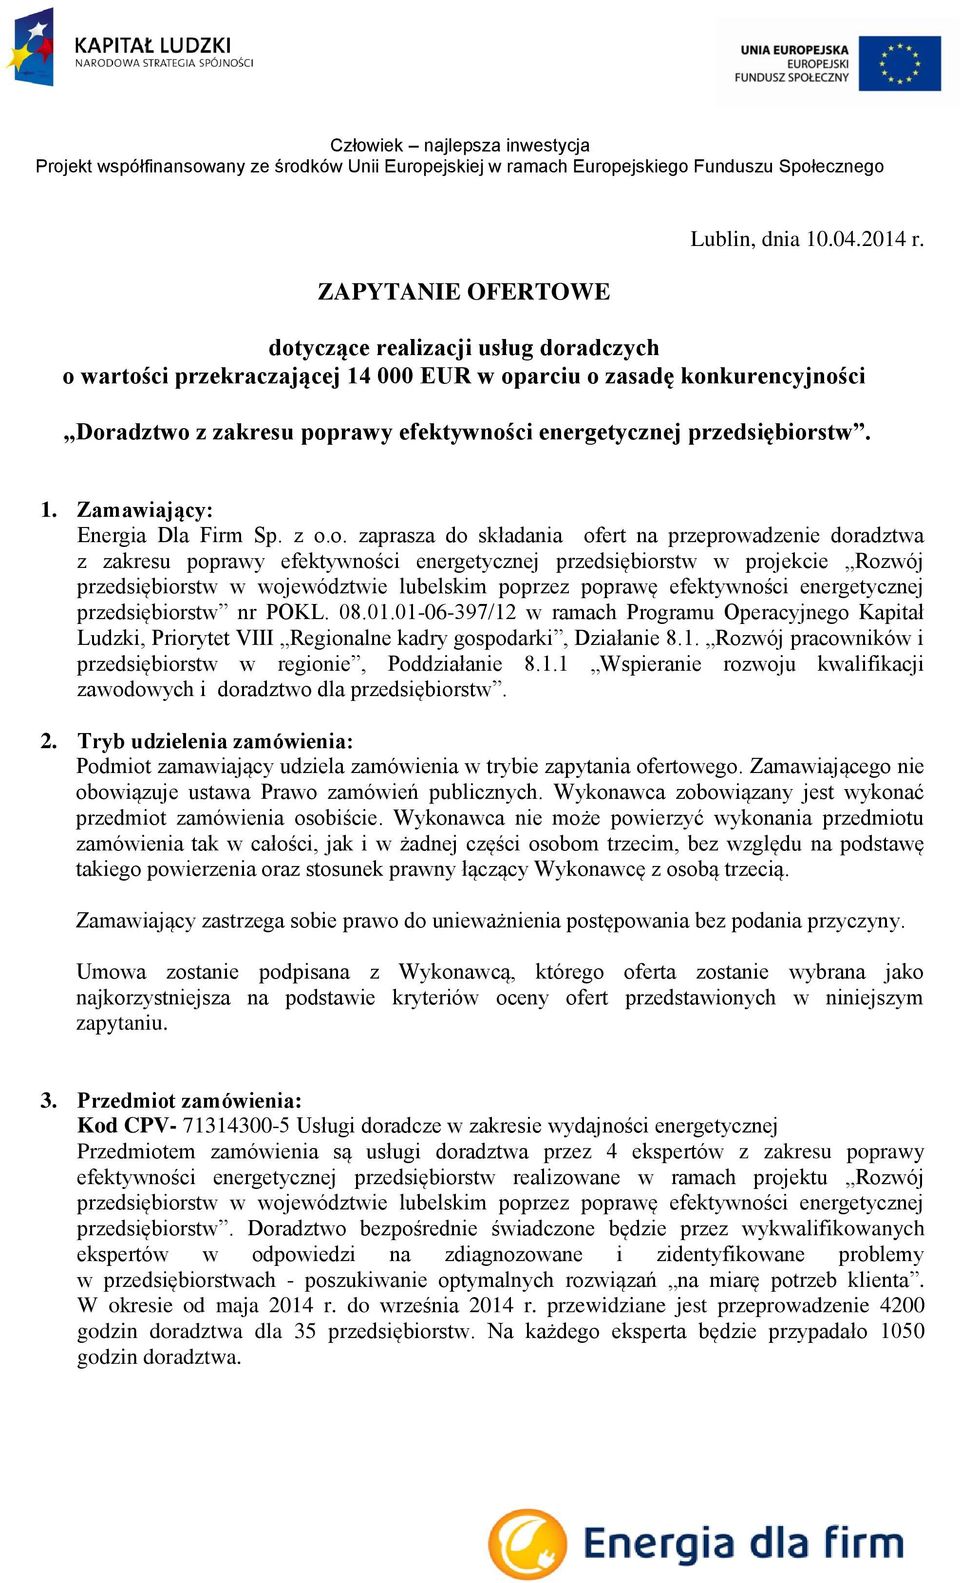 z o.o. zaprasza do składania ofert na przeprowadzenie doradztwa z zakresu poprawy efektywności energetycznej przedsiębiorstw w projekcie Rozwój przedsiębiorstw w województwie lubelskim poprzez